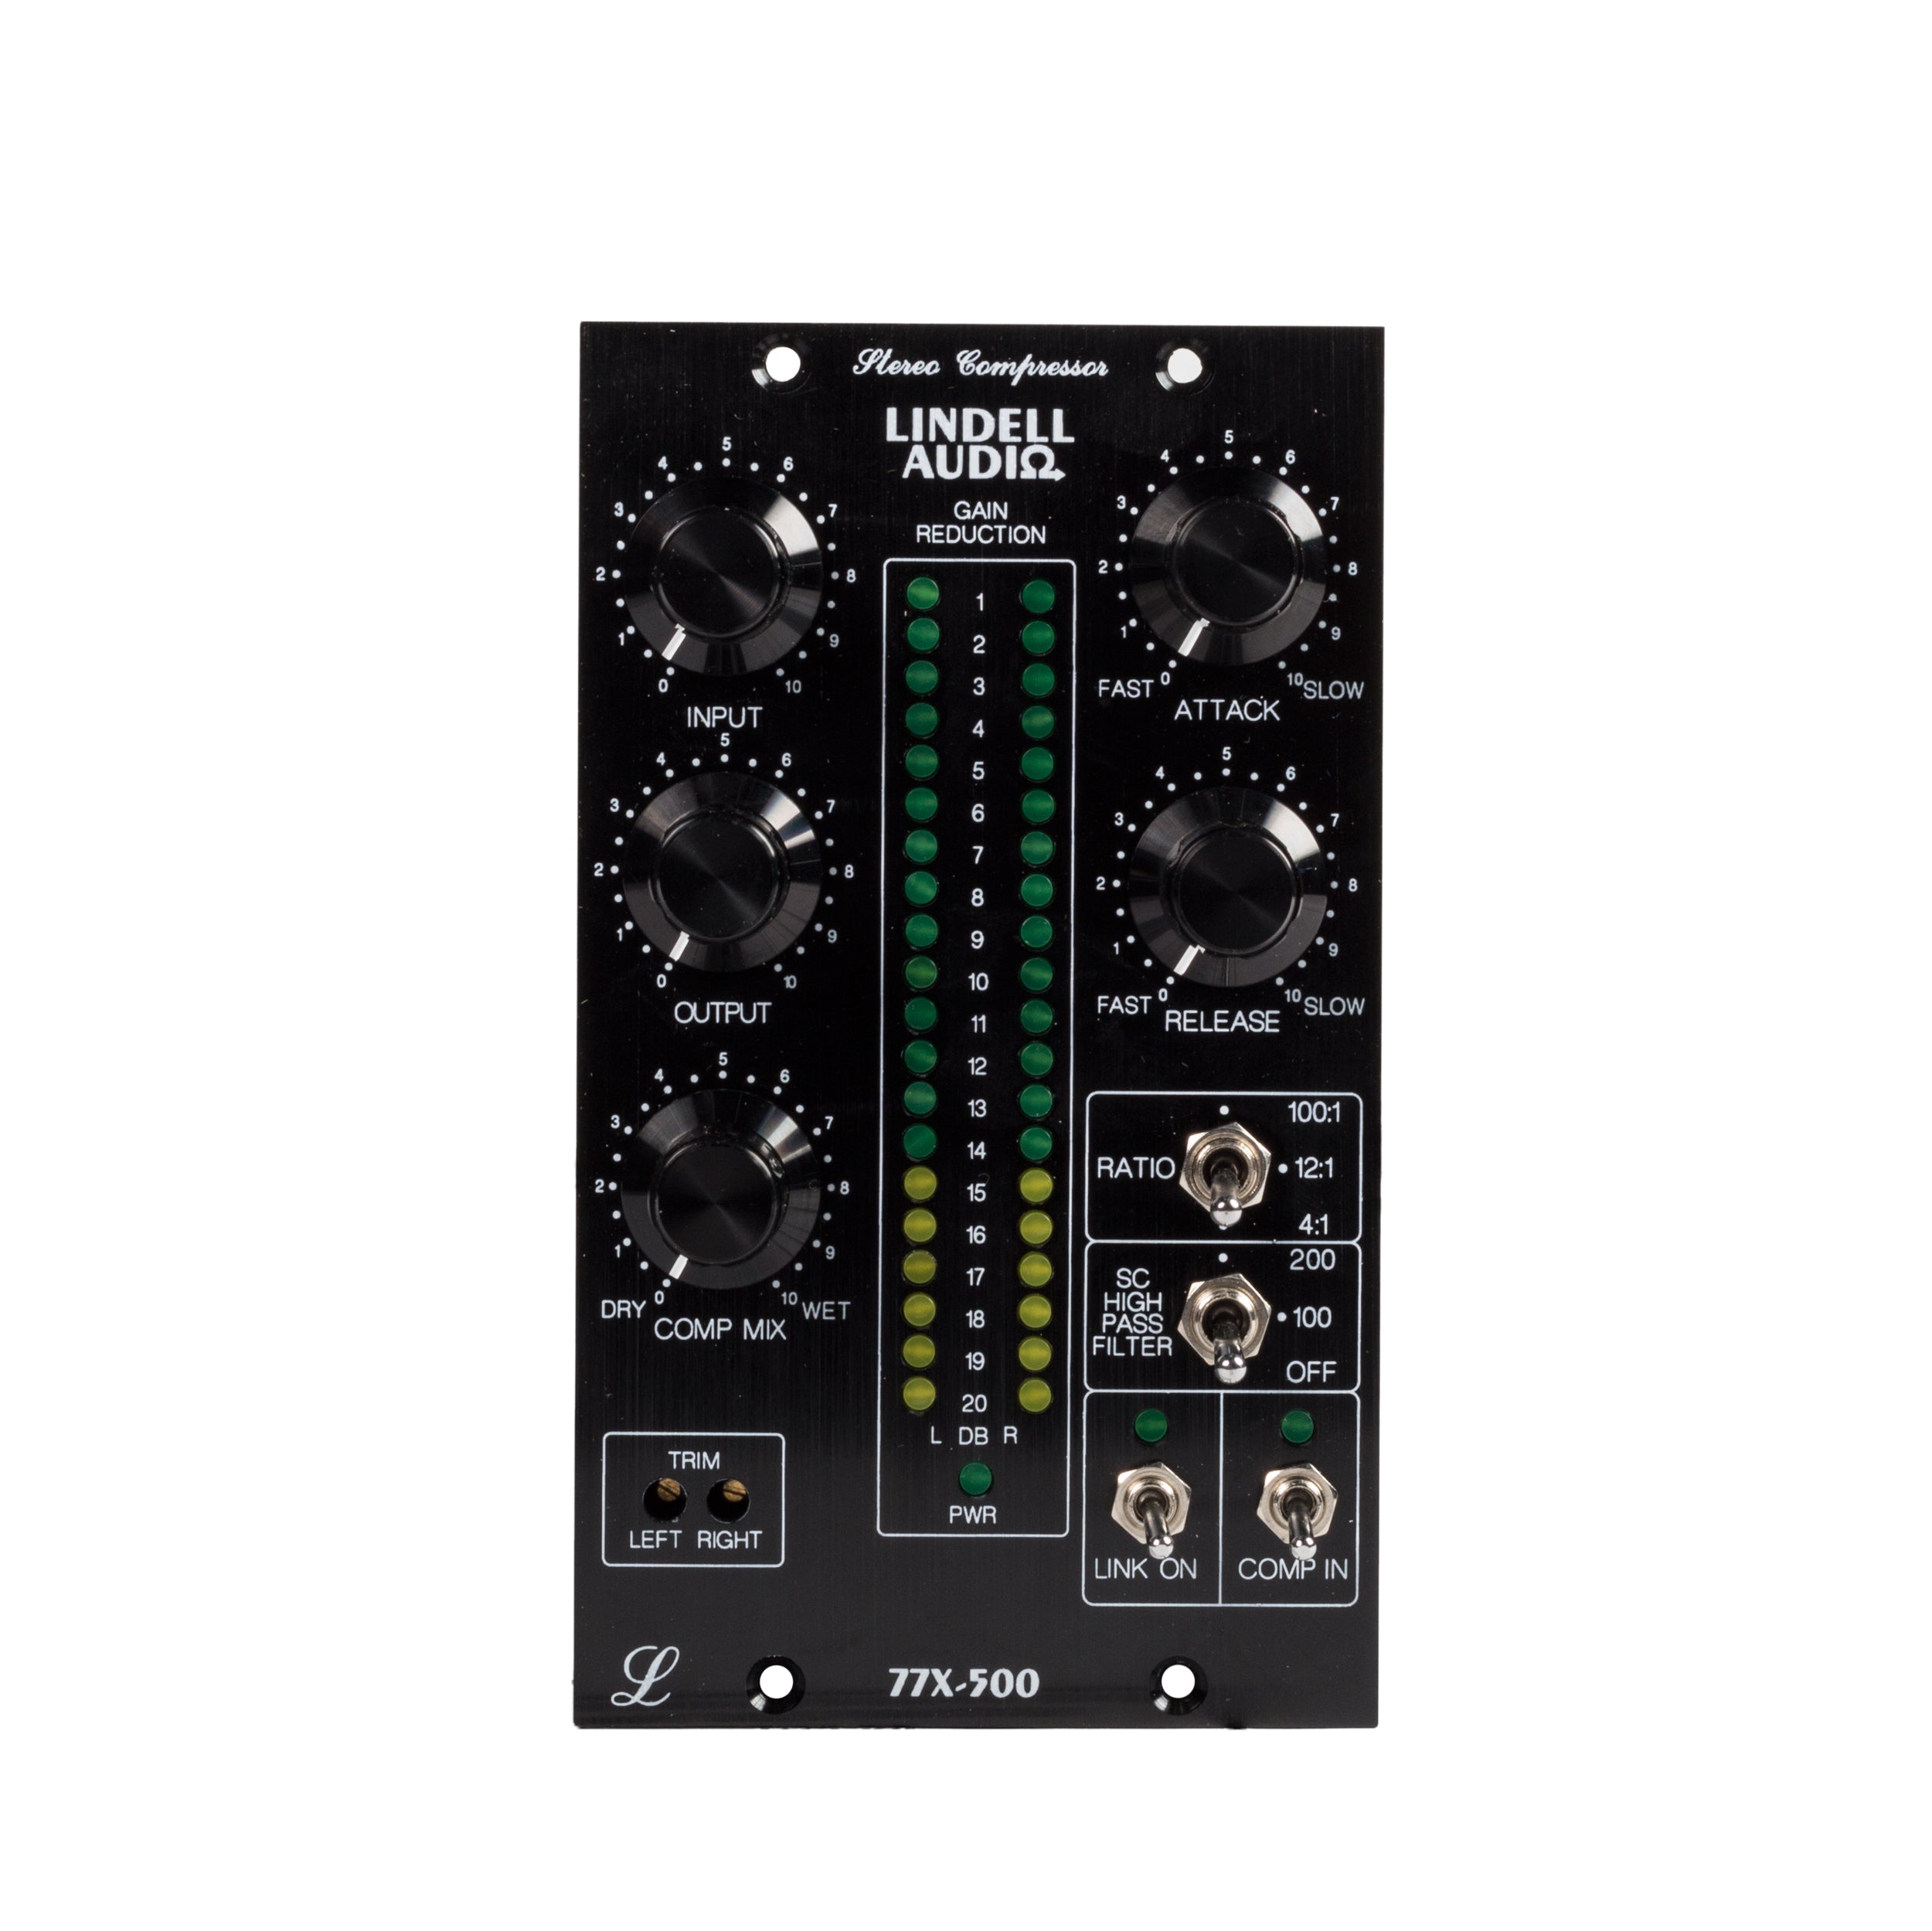 Lindell Audio 77X 500